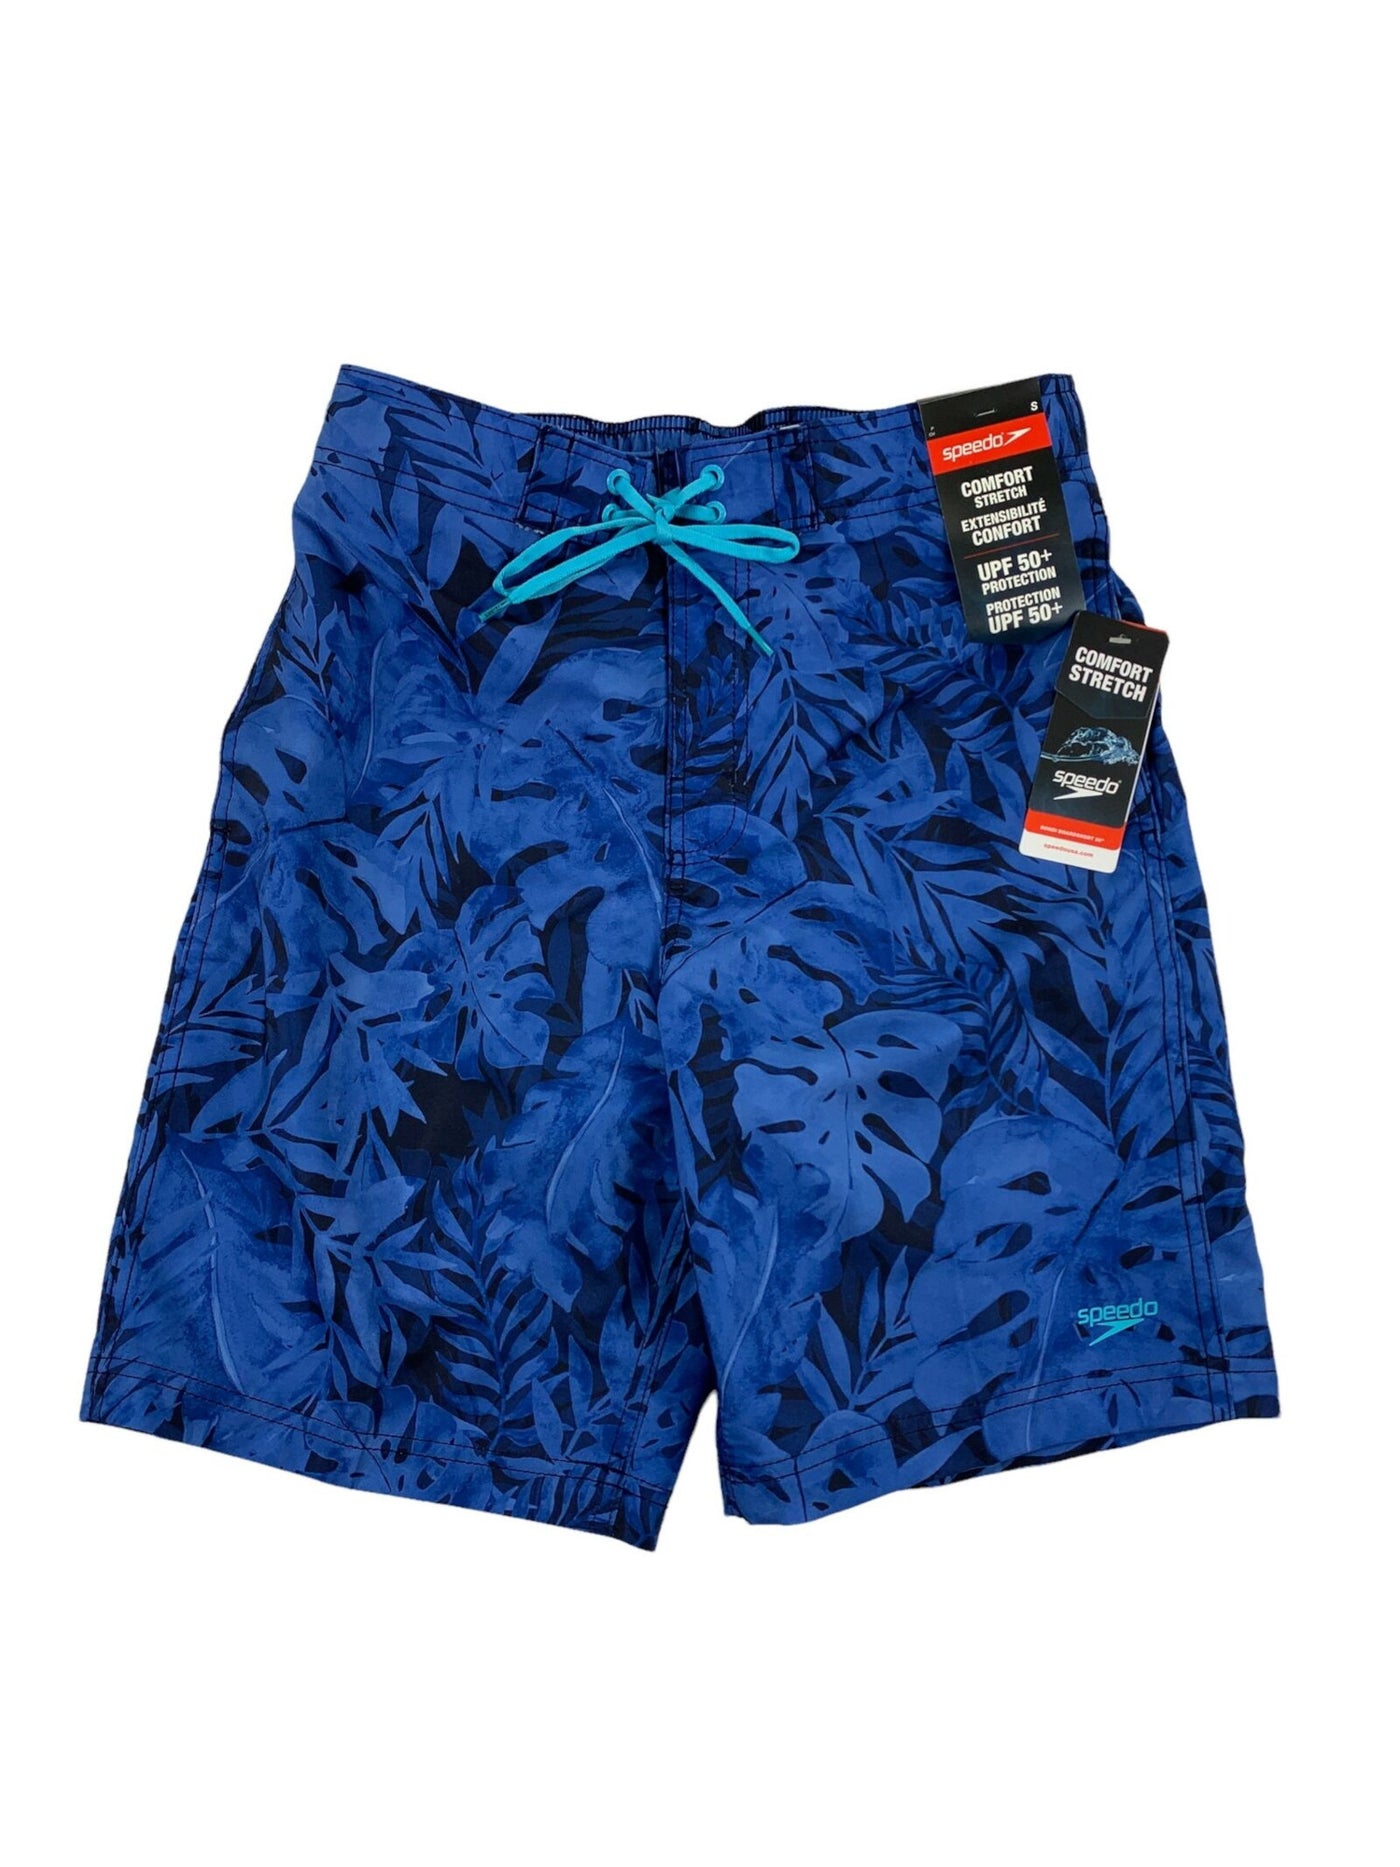 SPEEDO Mens Bondi Blue Drawstring, Printed Stretch Athletic Shorts XXL